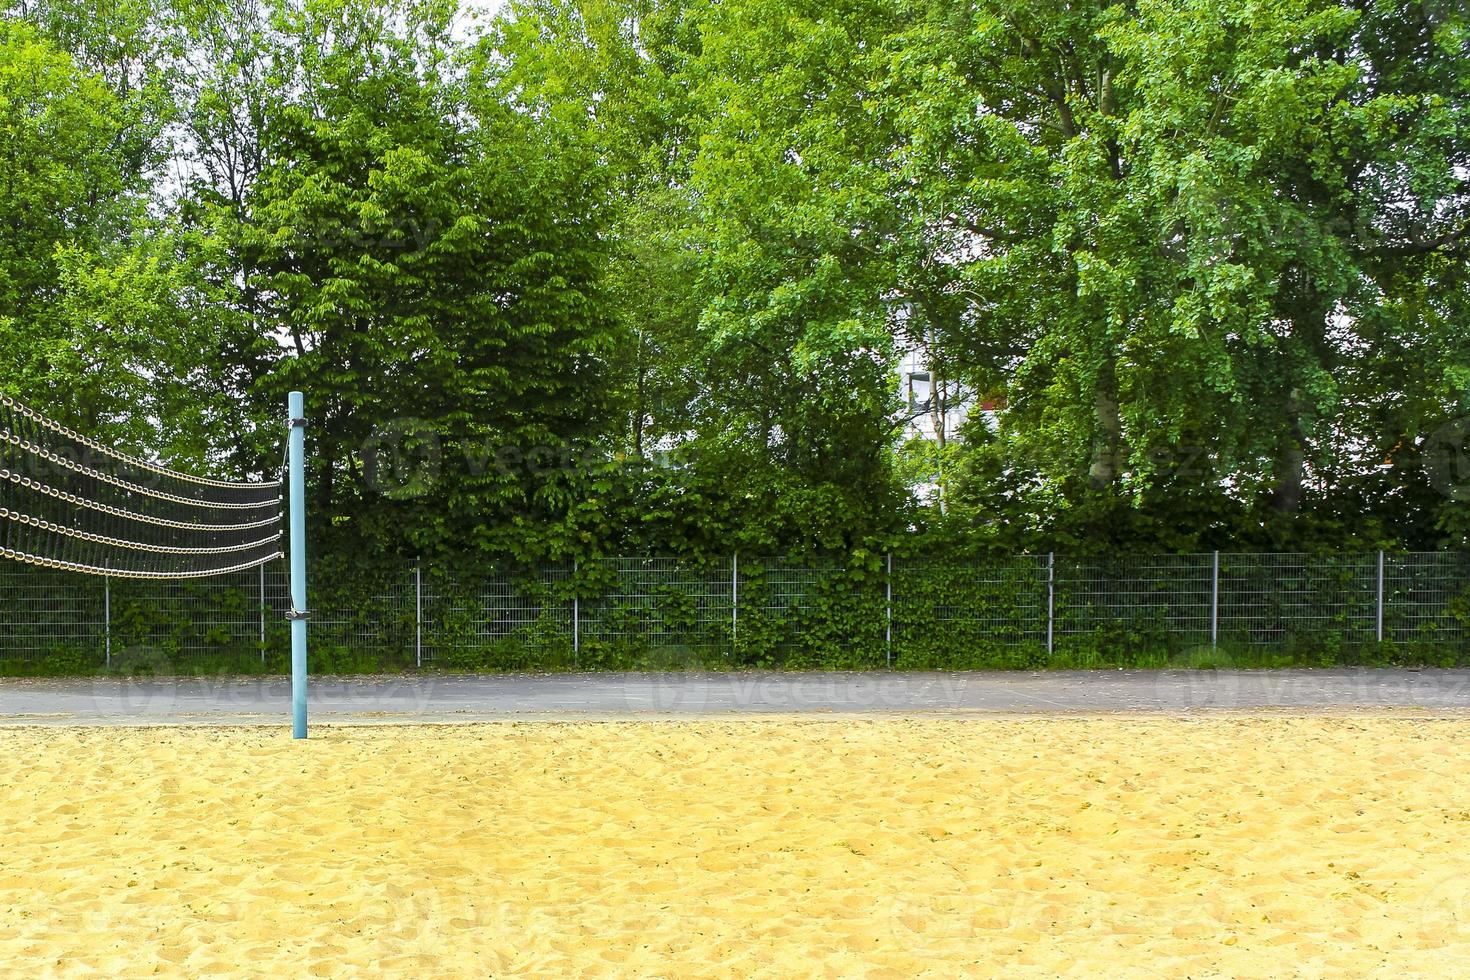 Red de voleibol y campo de juego al aire libre en la naturaleza en Alemania. foto